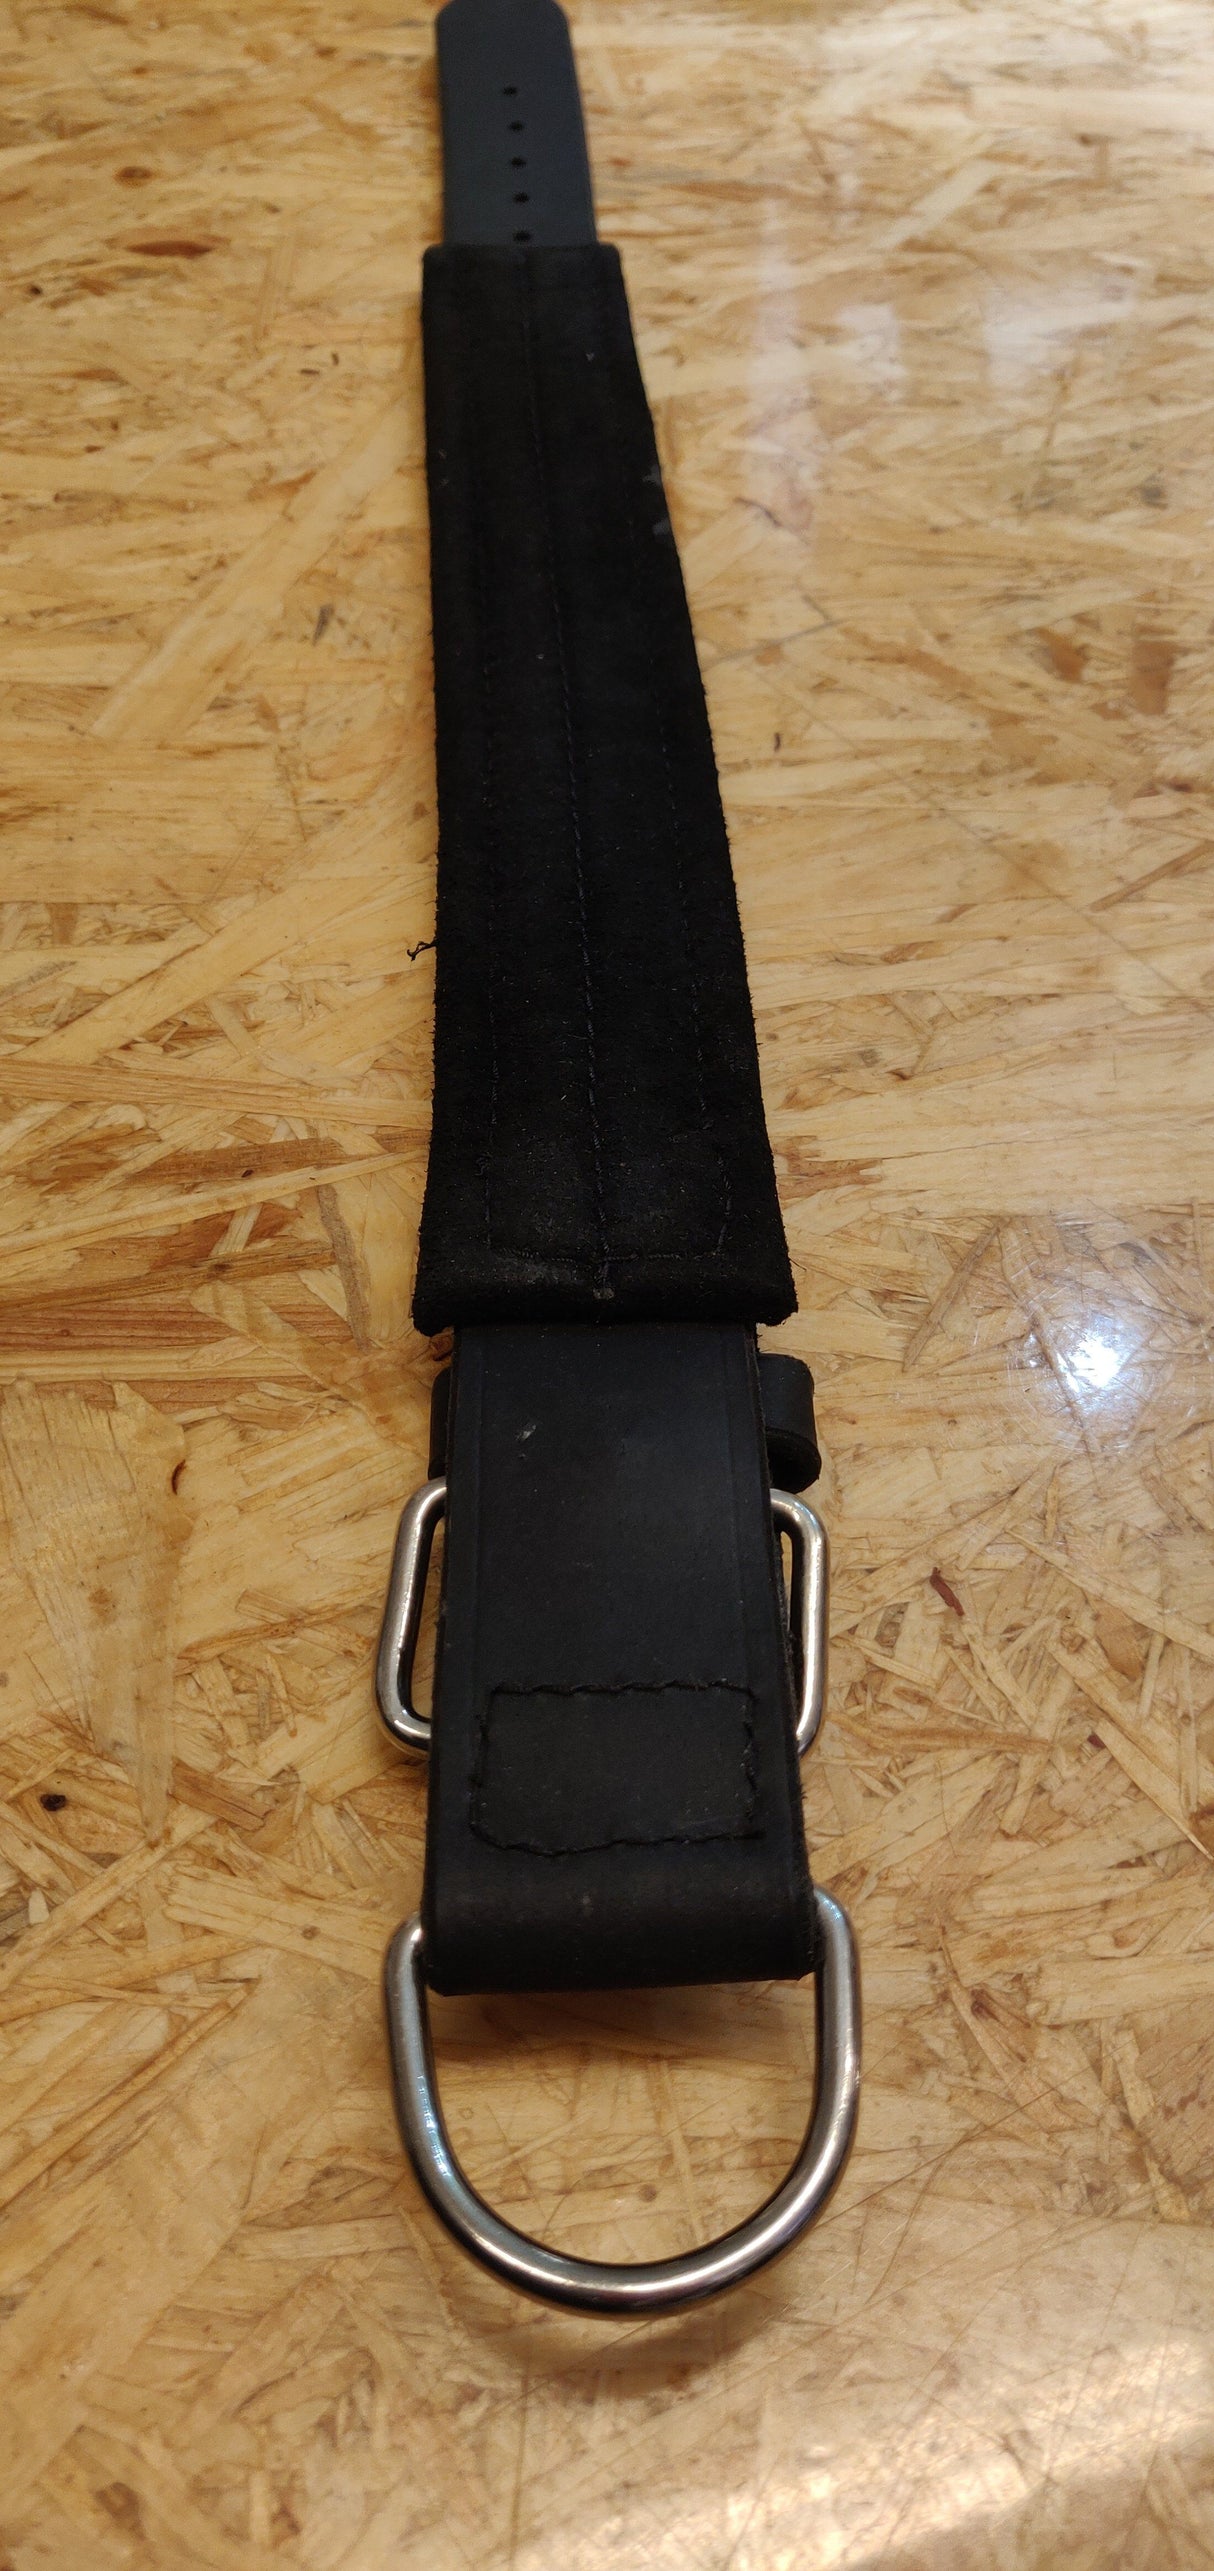 Beskrivelse: Et sort Hunde læderhalsbånd med indvendig filt, metalspænde fra brandet Læder.